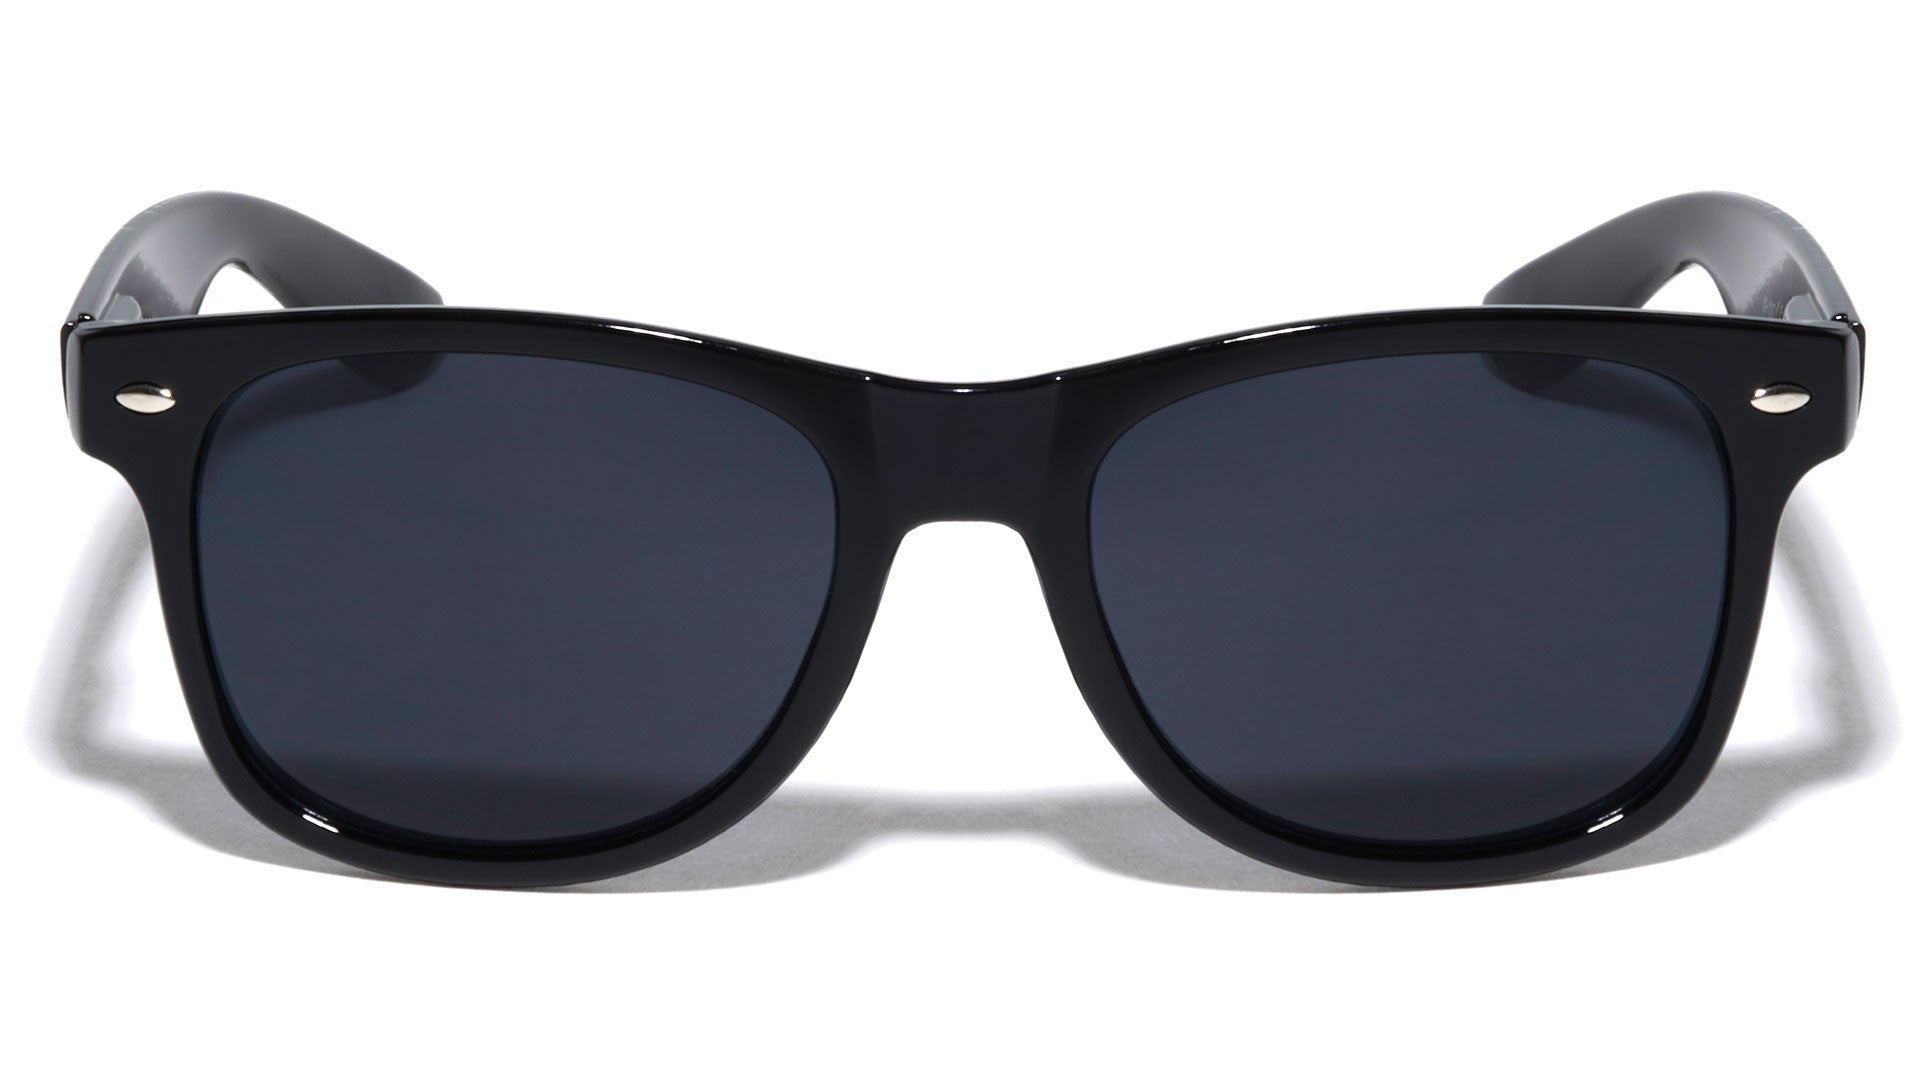 Assorted Dozen (12) Classic Spring Hinge Sunglasses with Super Dark Lens